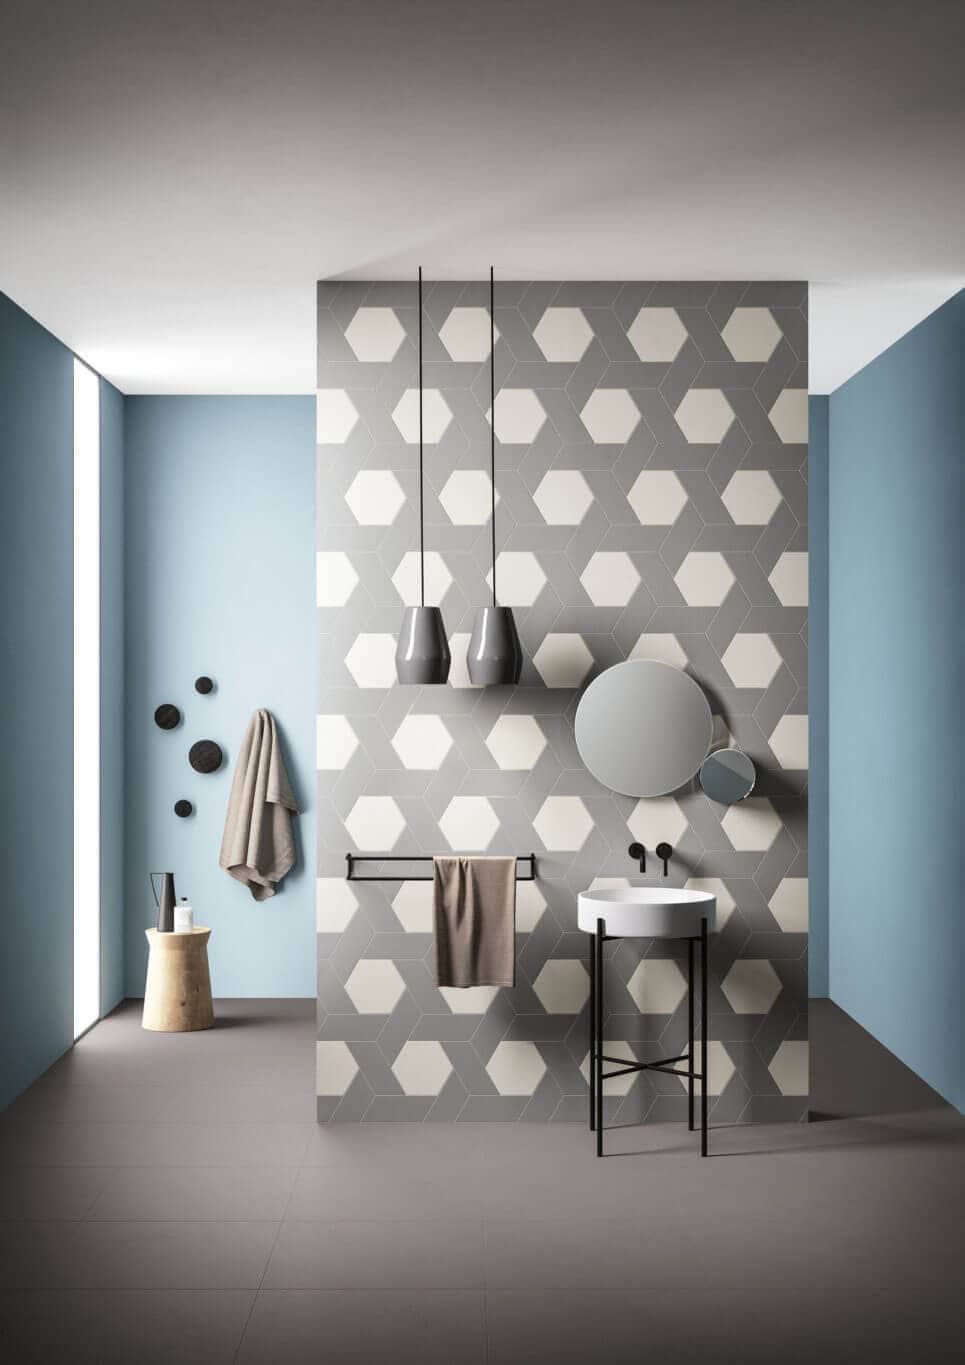 Hexagon tiles interlaced with rhomboid tiles on a bathroom wall